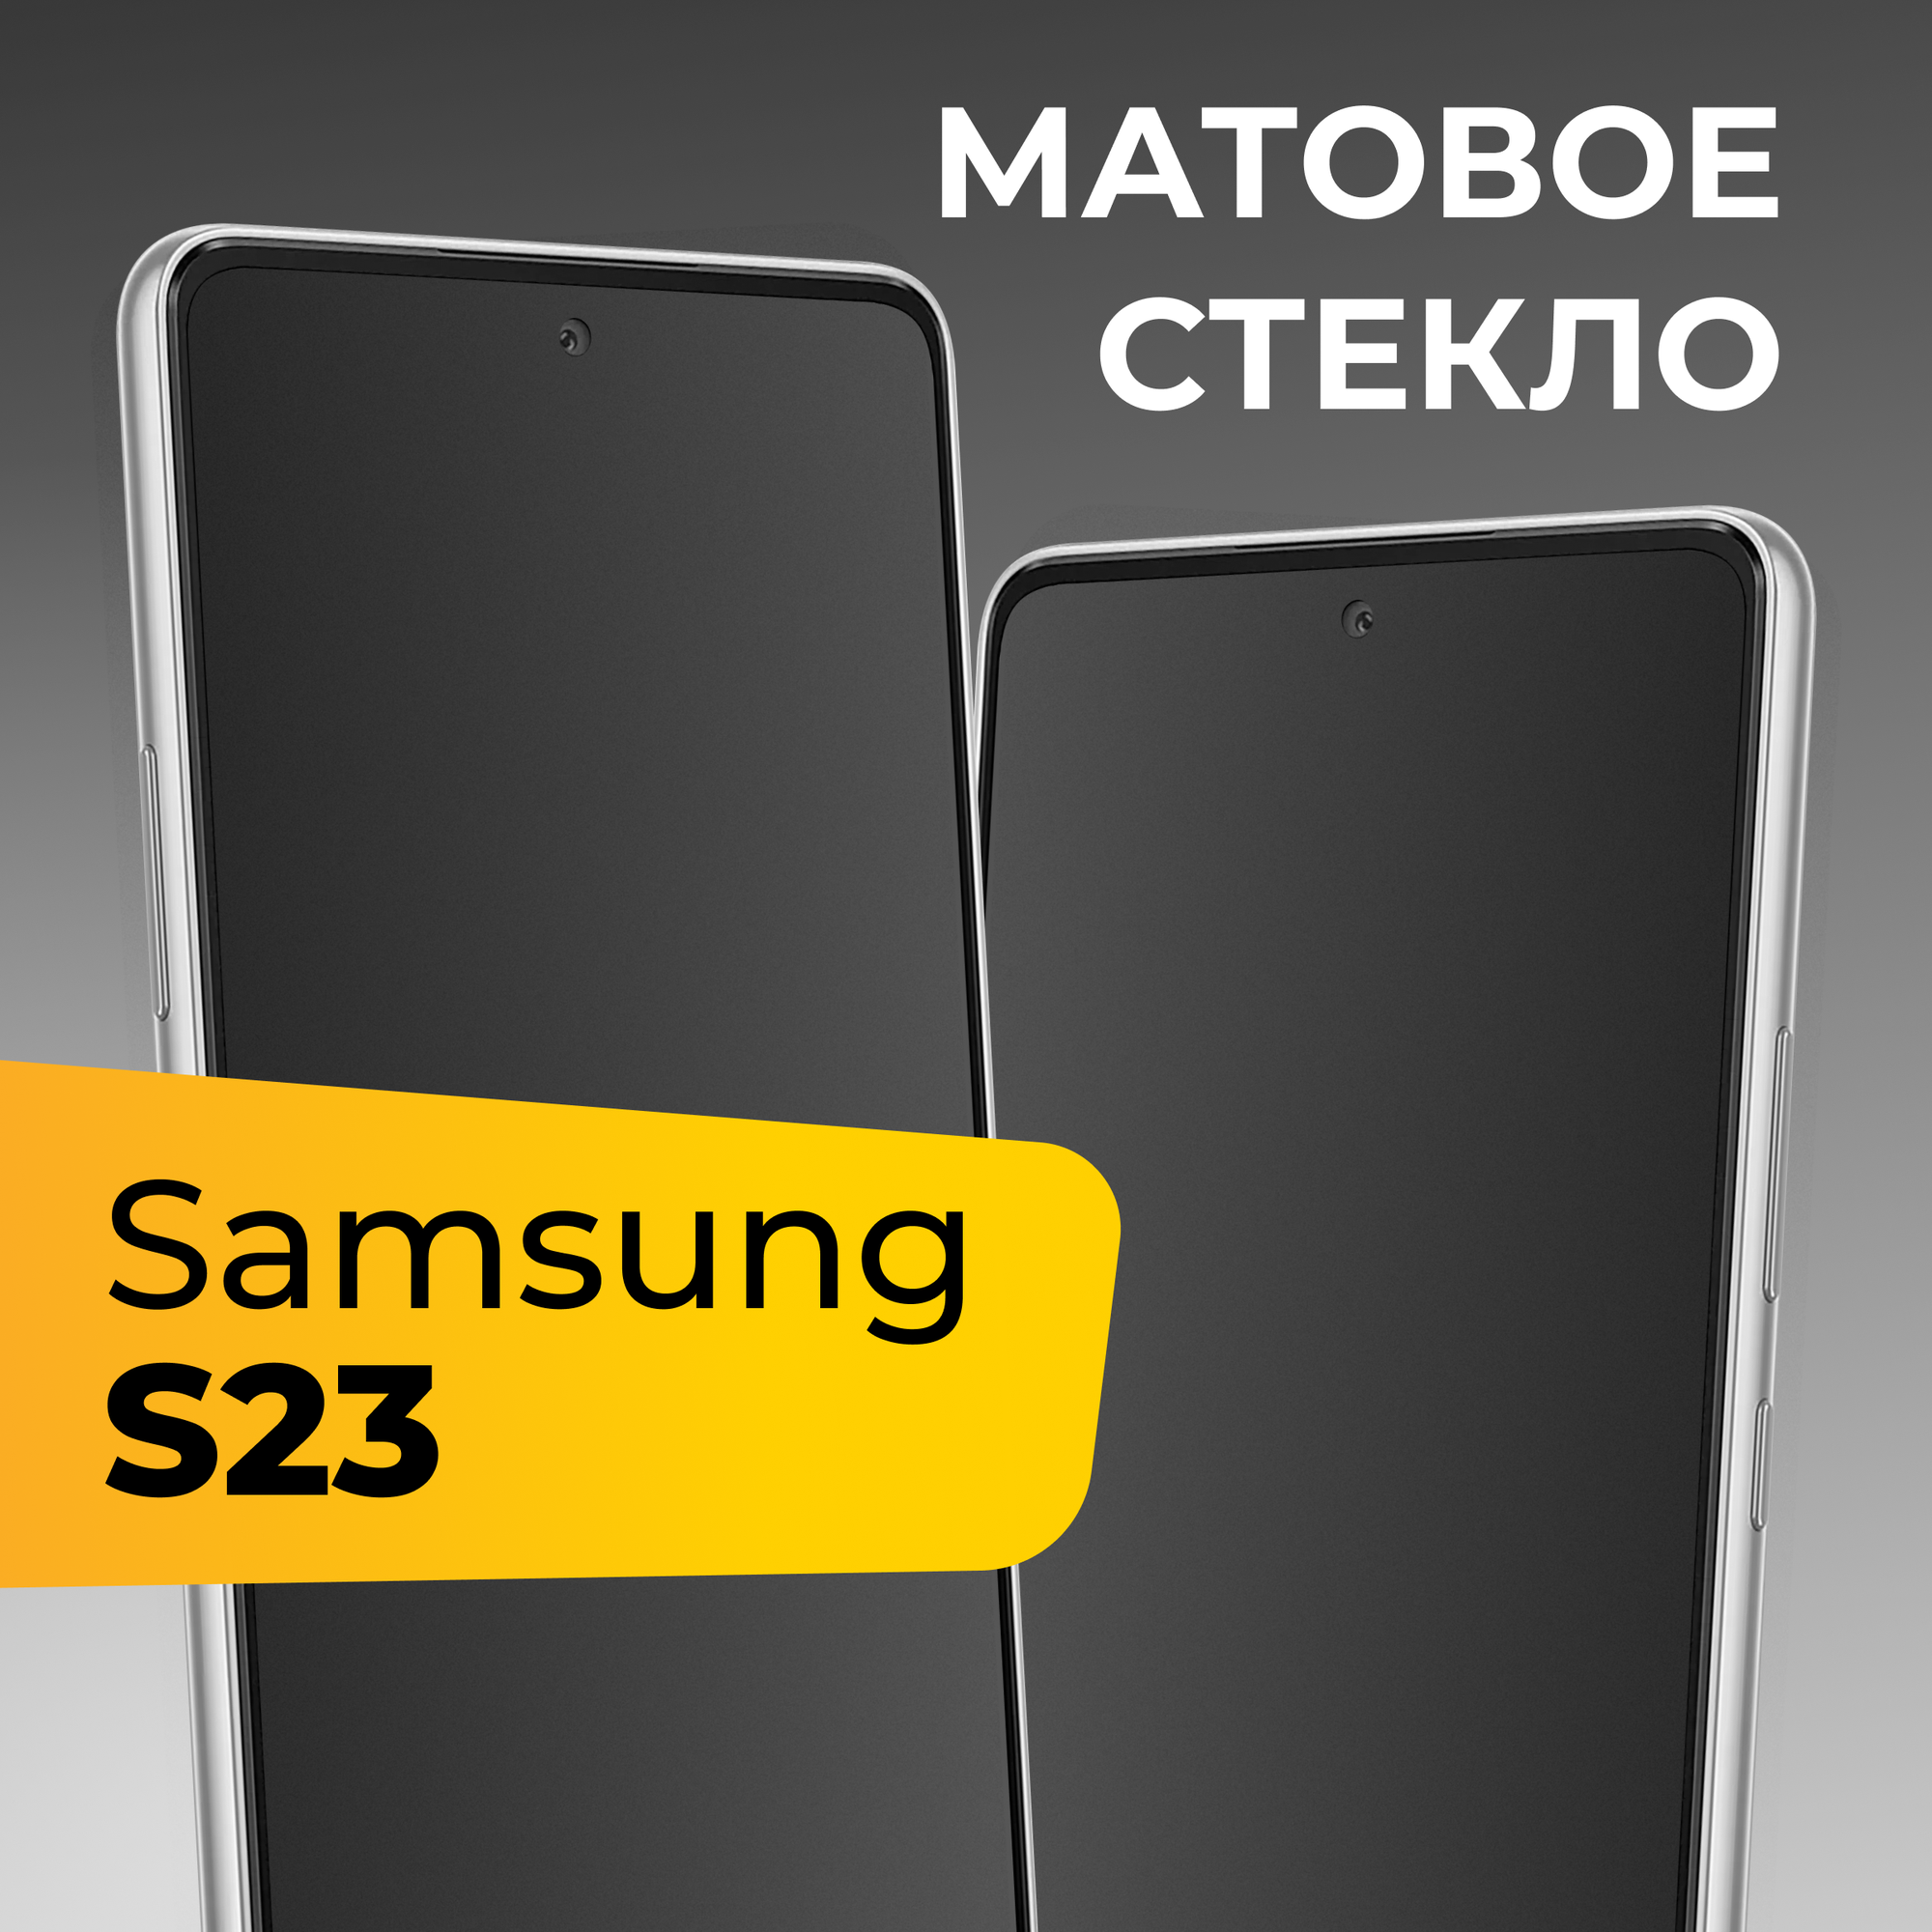 Матовое защитное стекло с полным покрытием экрана для смартфона Samsung Galaxy S23 / Противоударное закаленное стекло на телефон Самсунг Галакси С23